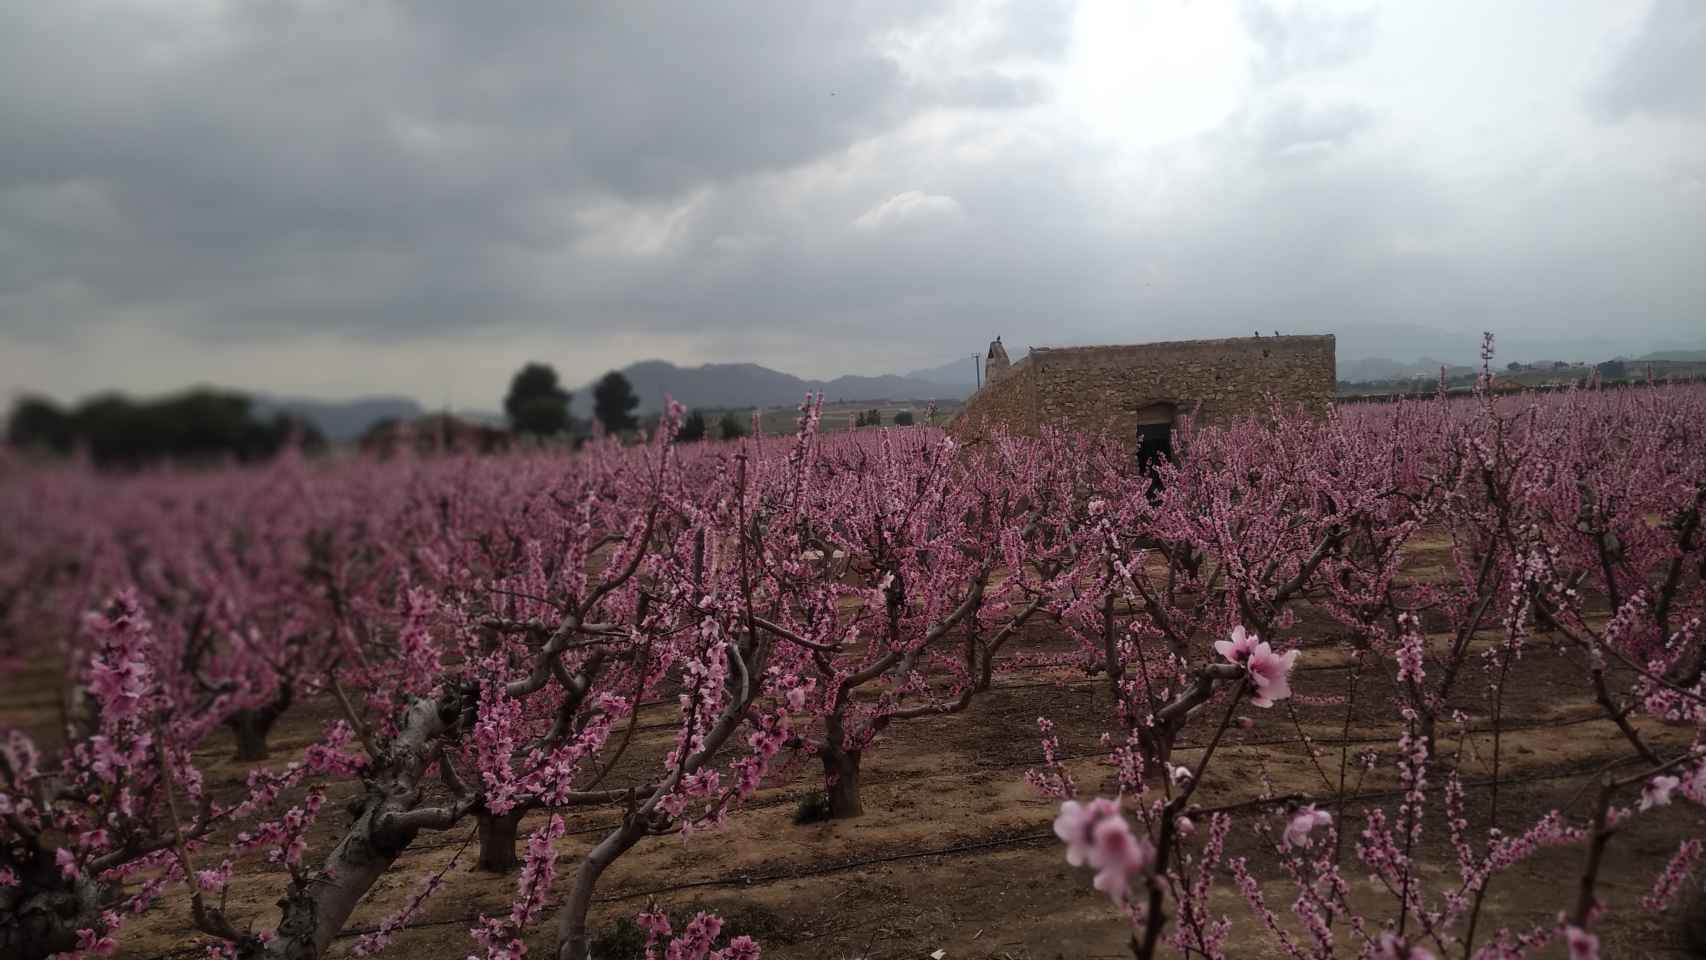 Una finca agrícola de Hoya del Campo donde los almendros se encuentran en floración.